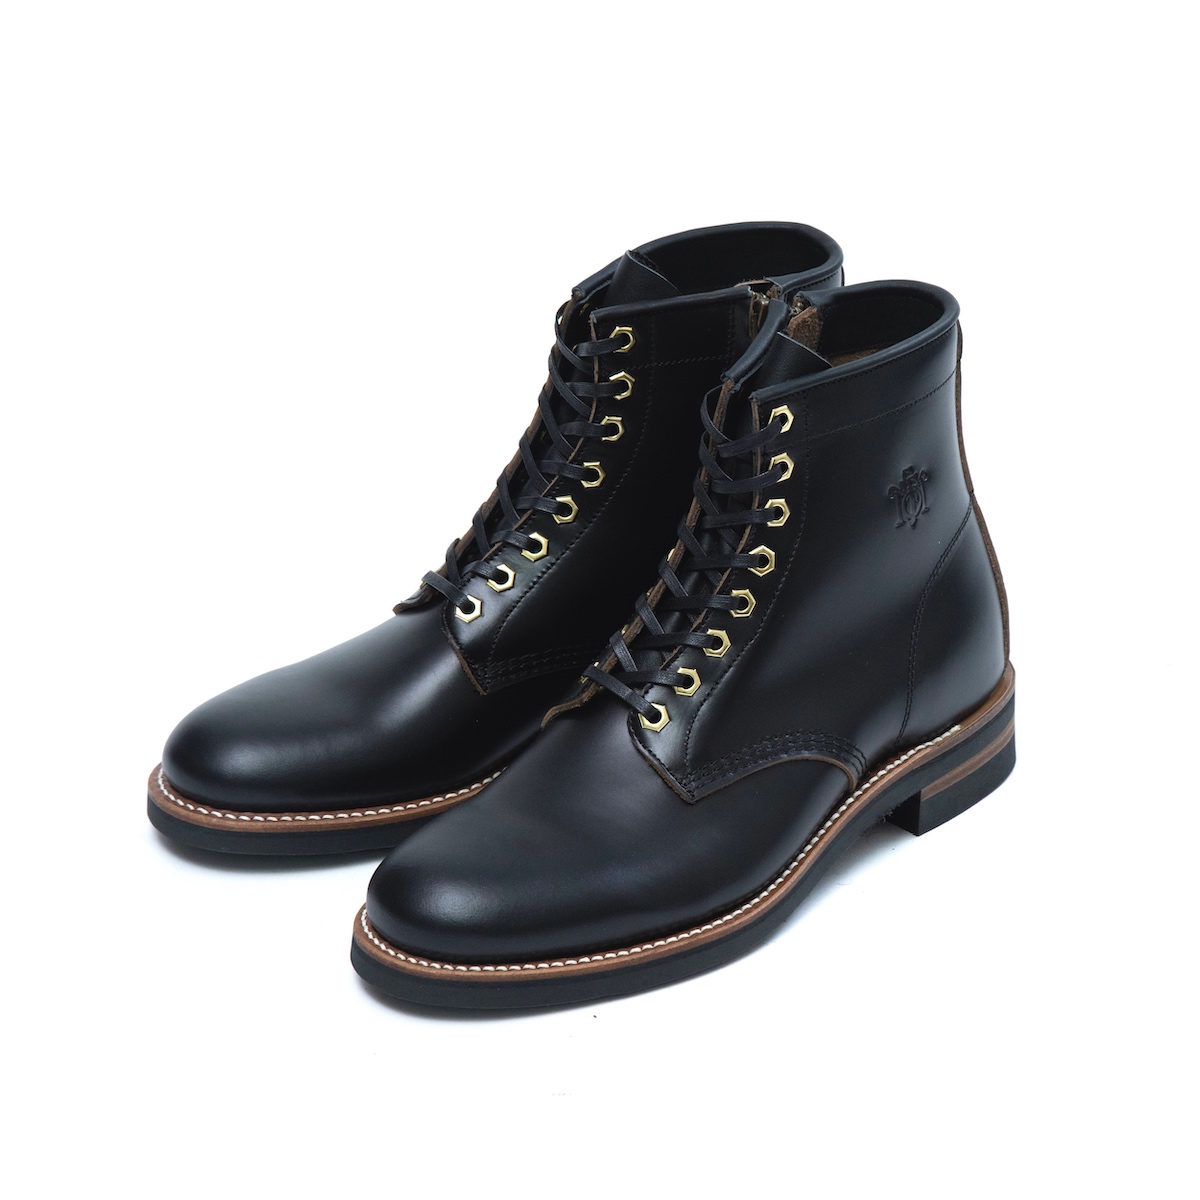 11,610円「TAKE FIVE MILE」 Army dress boots BLACK